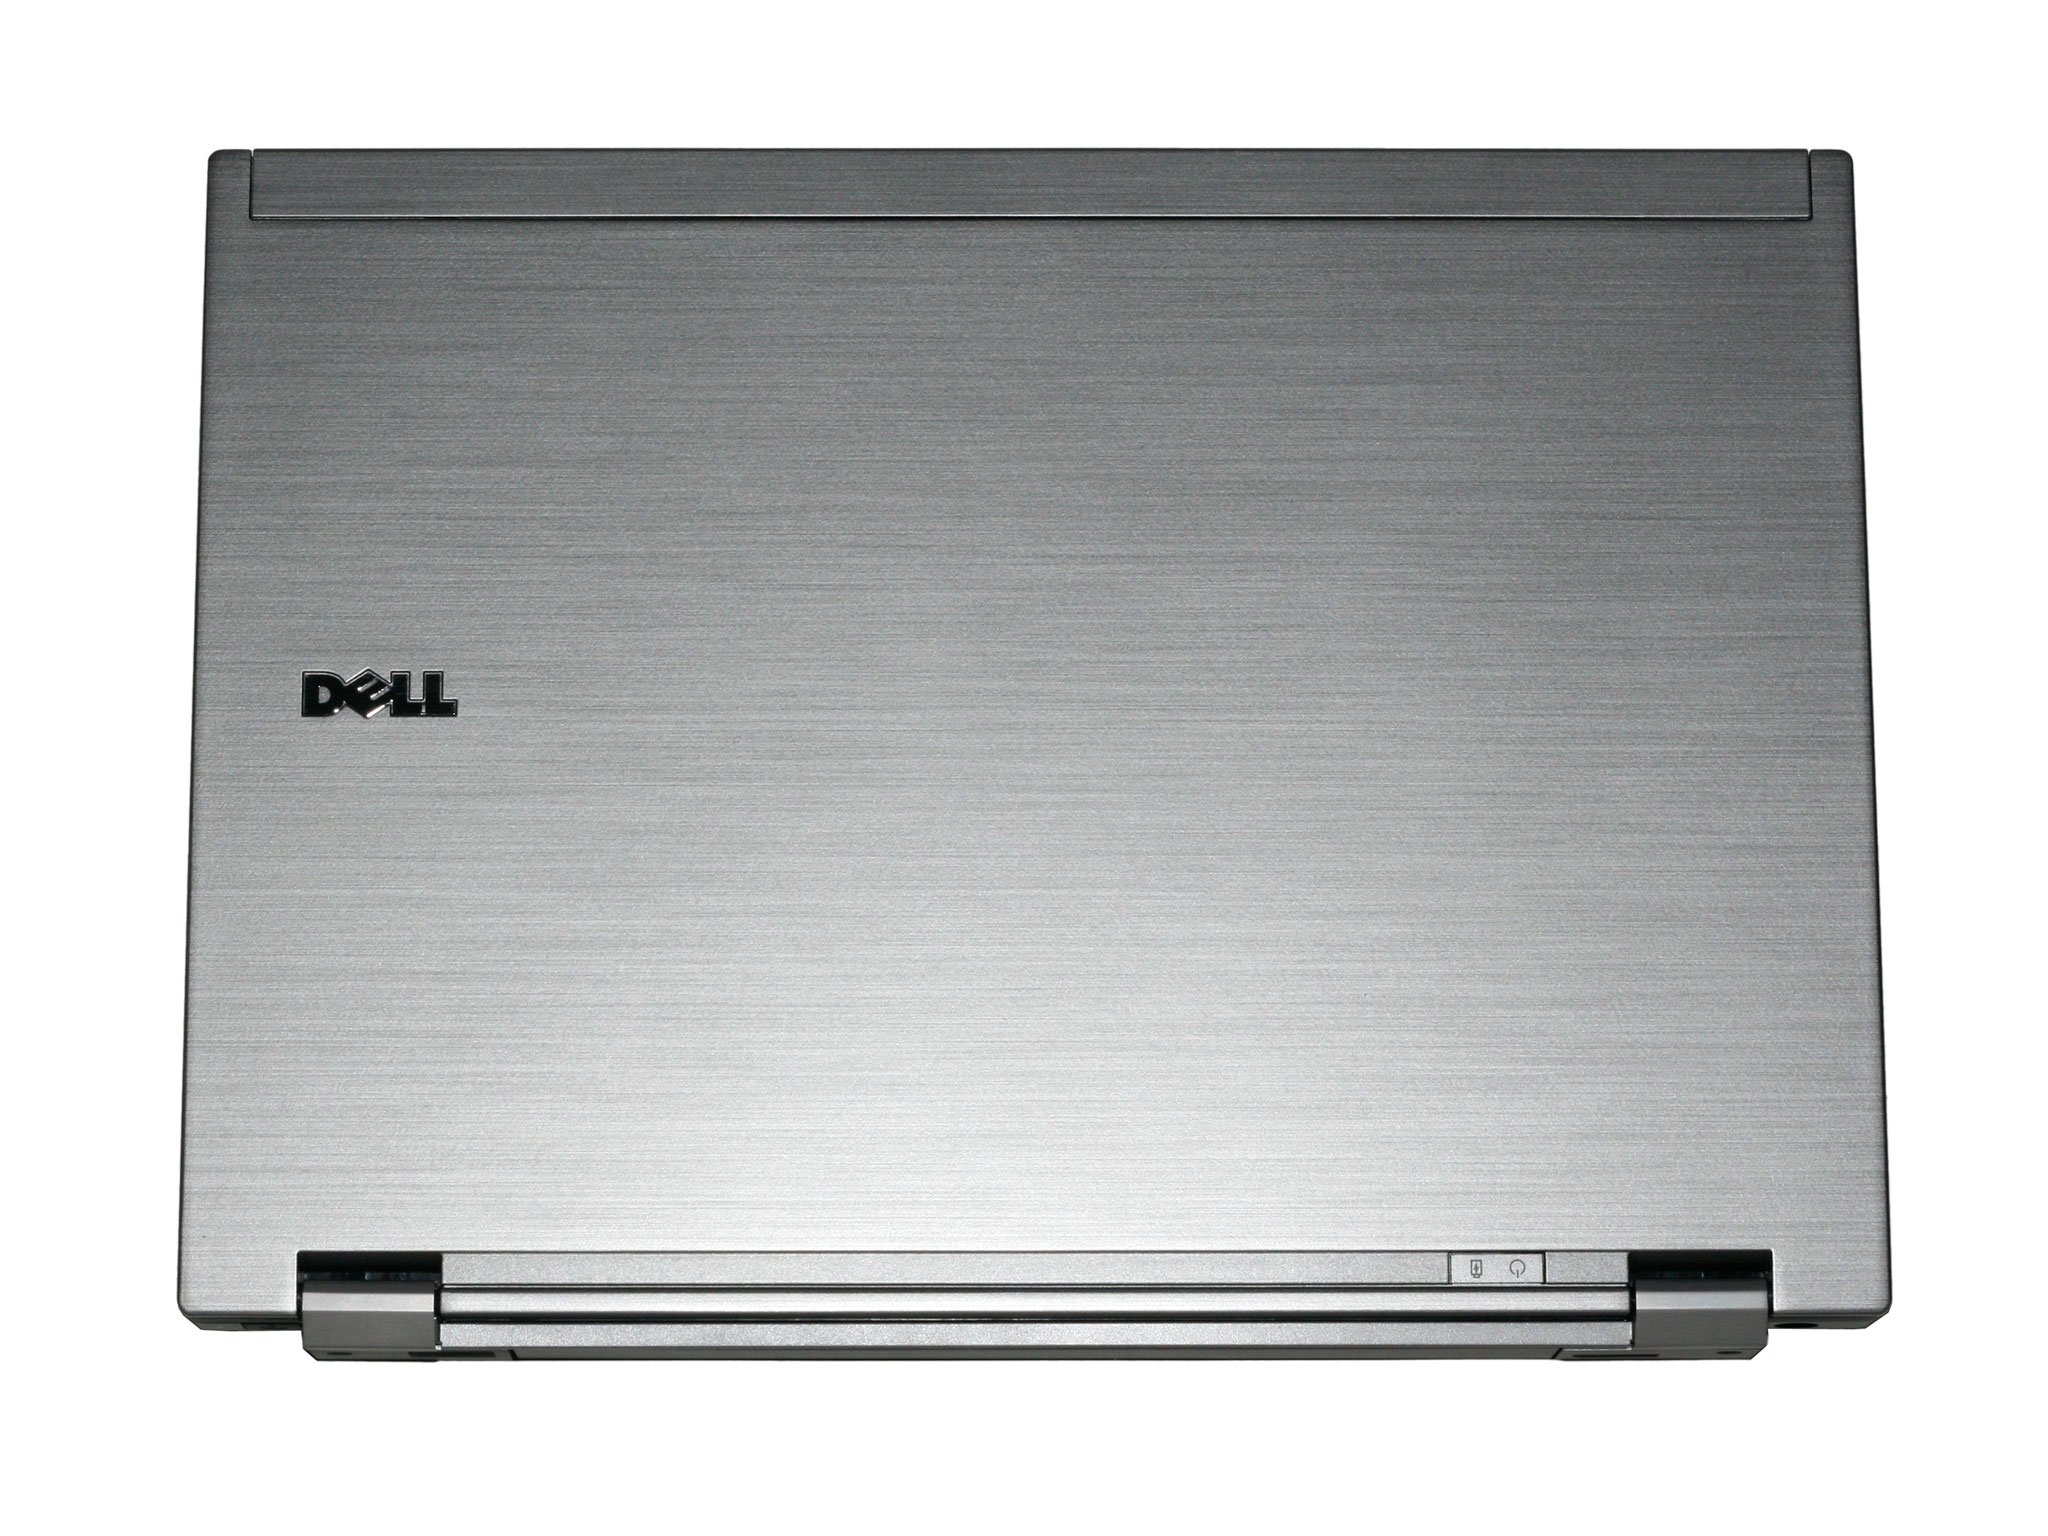 *Dell Latitude E4200 SSD 64G-Dell E4300 -E6400 Giá tốt sinh viên- Dell M4400-M4500* - 15